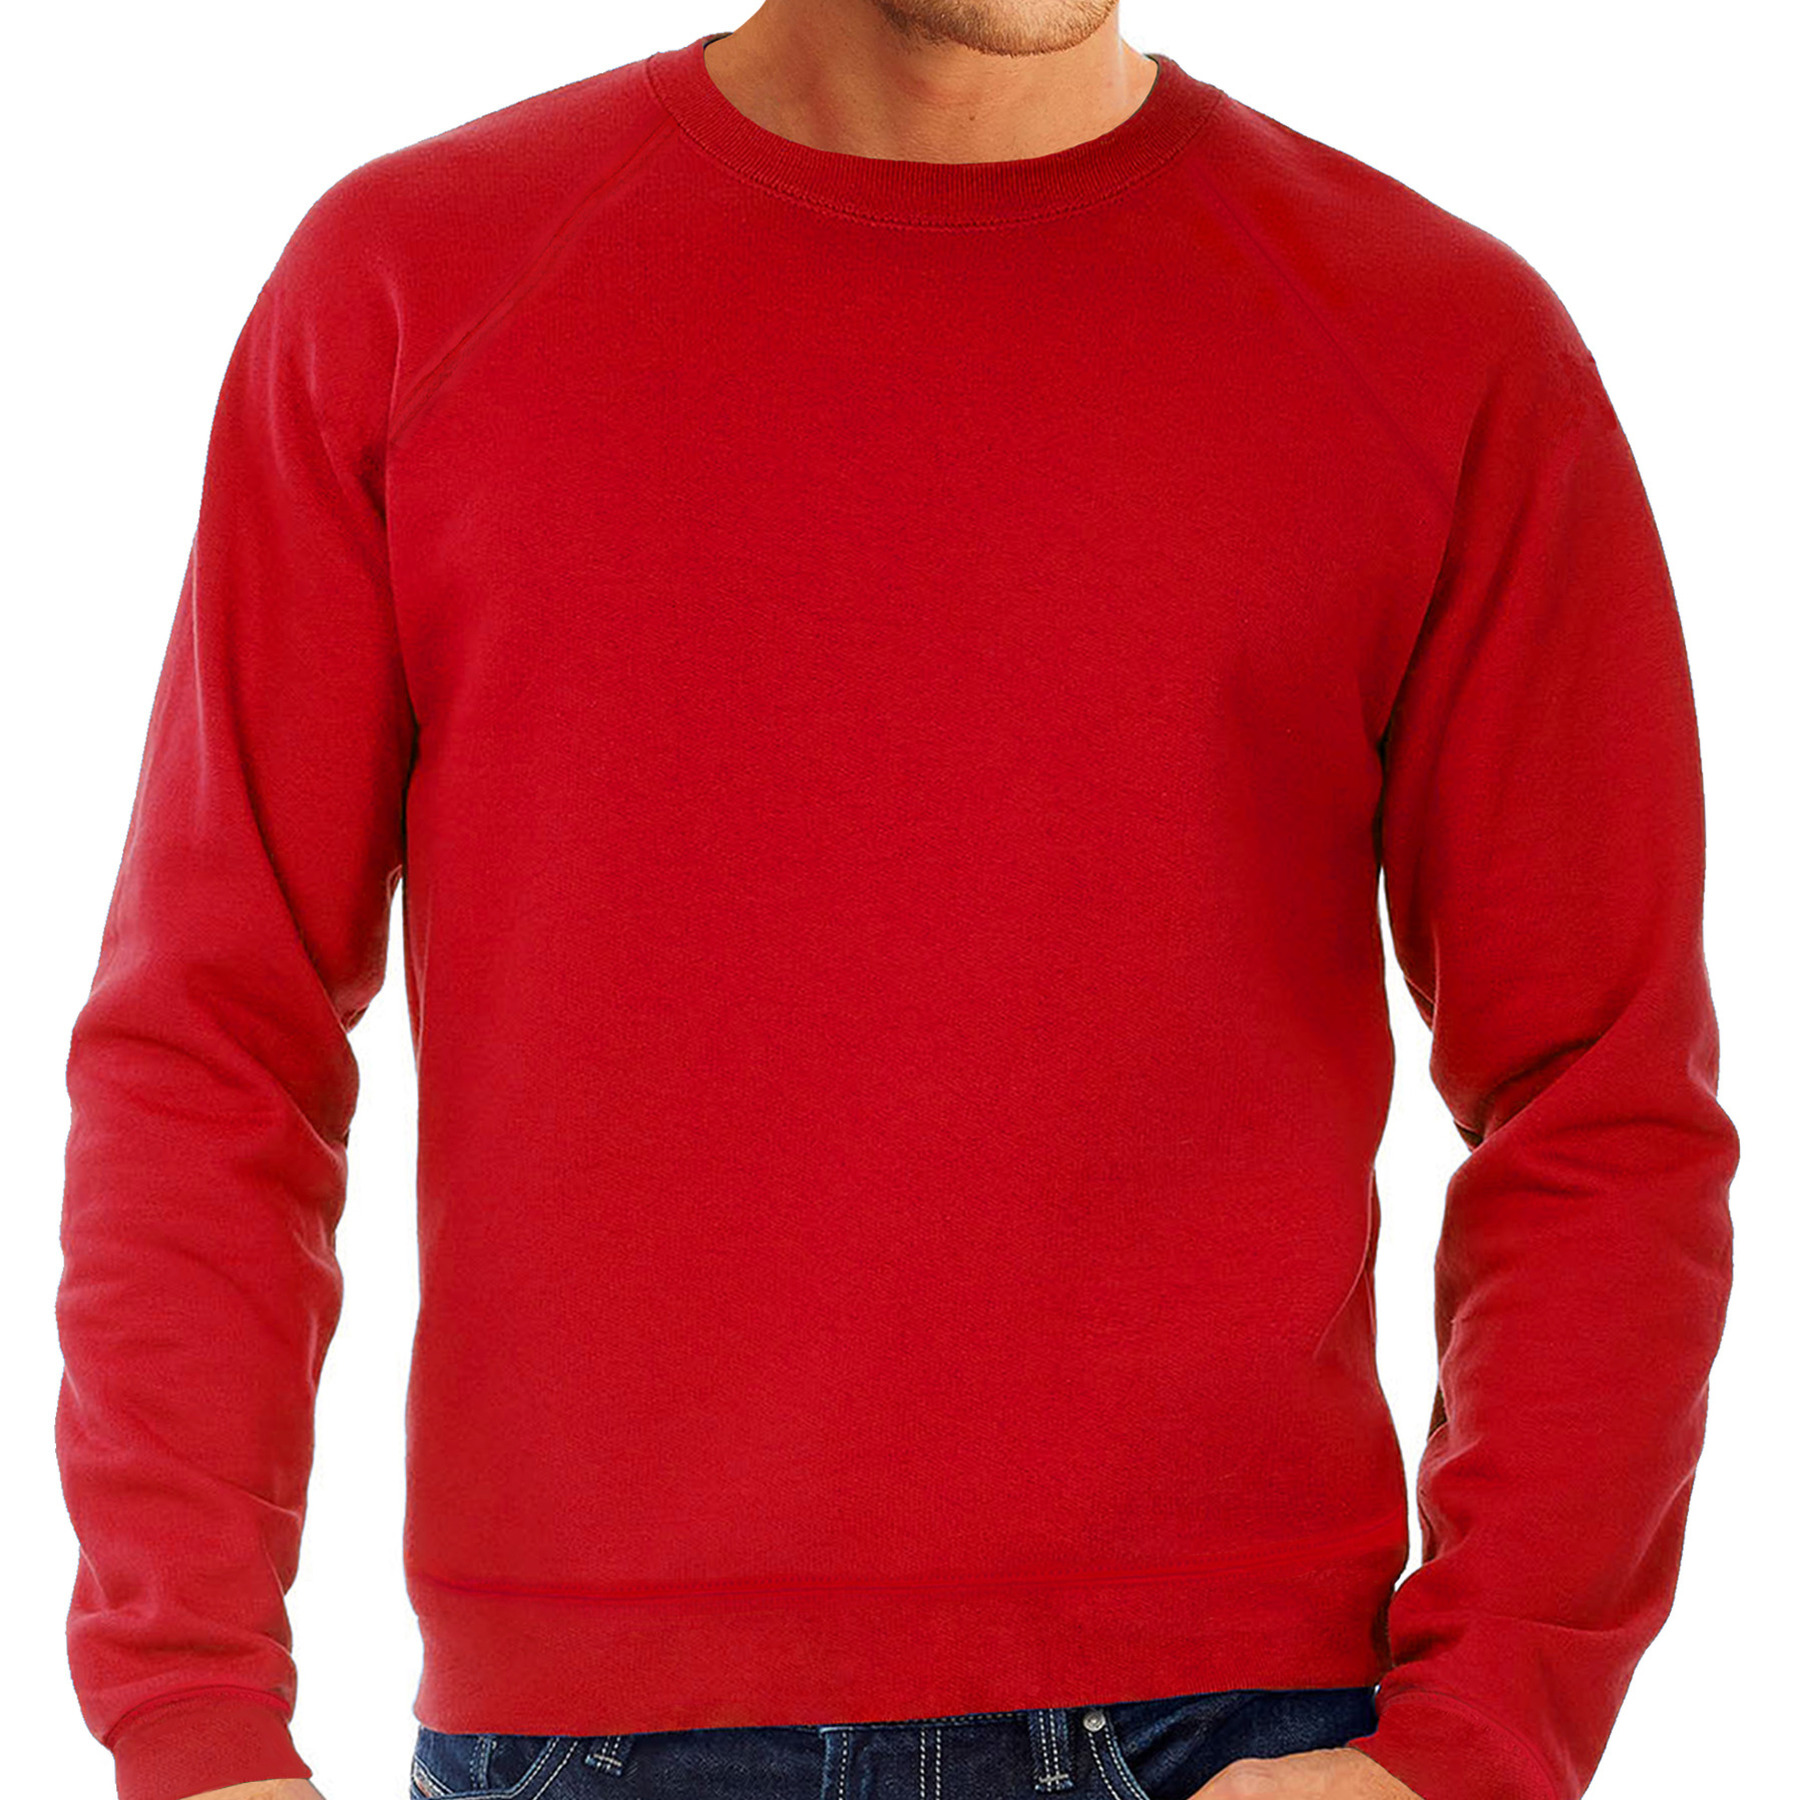 Sweater / sweatshirt trui rood met ronde hals en raglan mouwen voor mannen